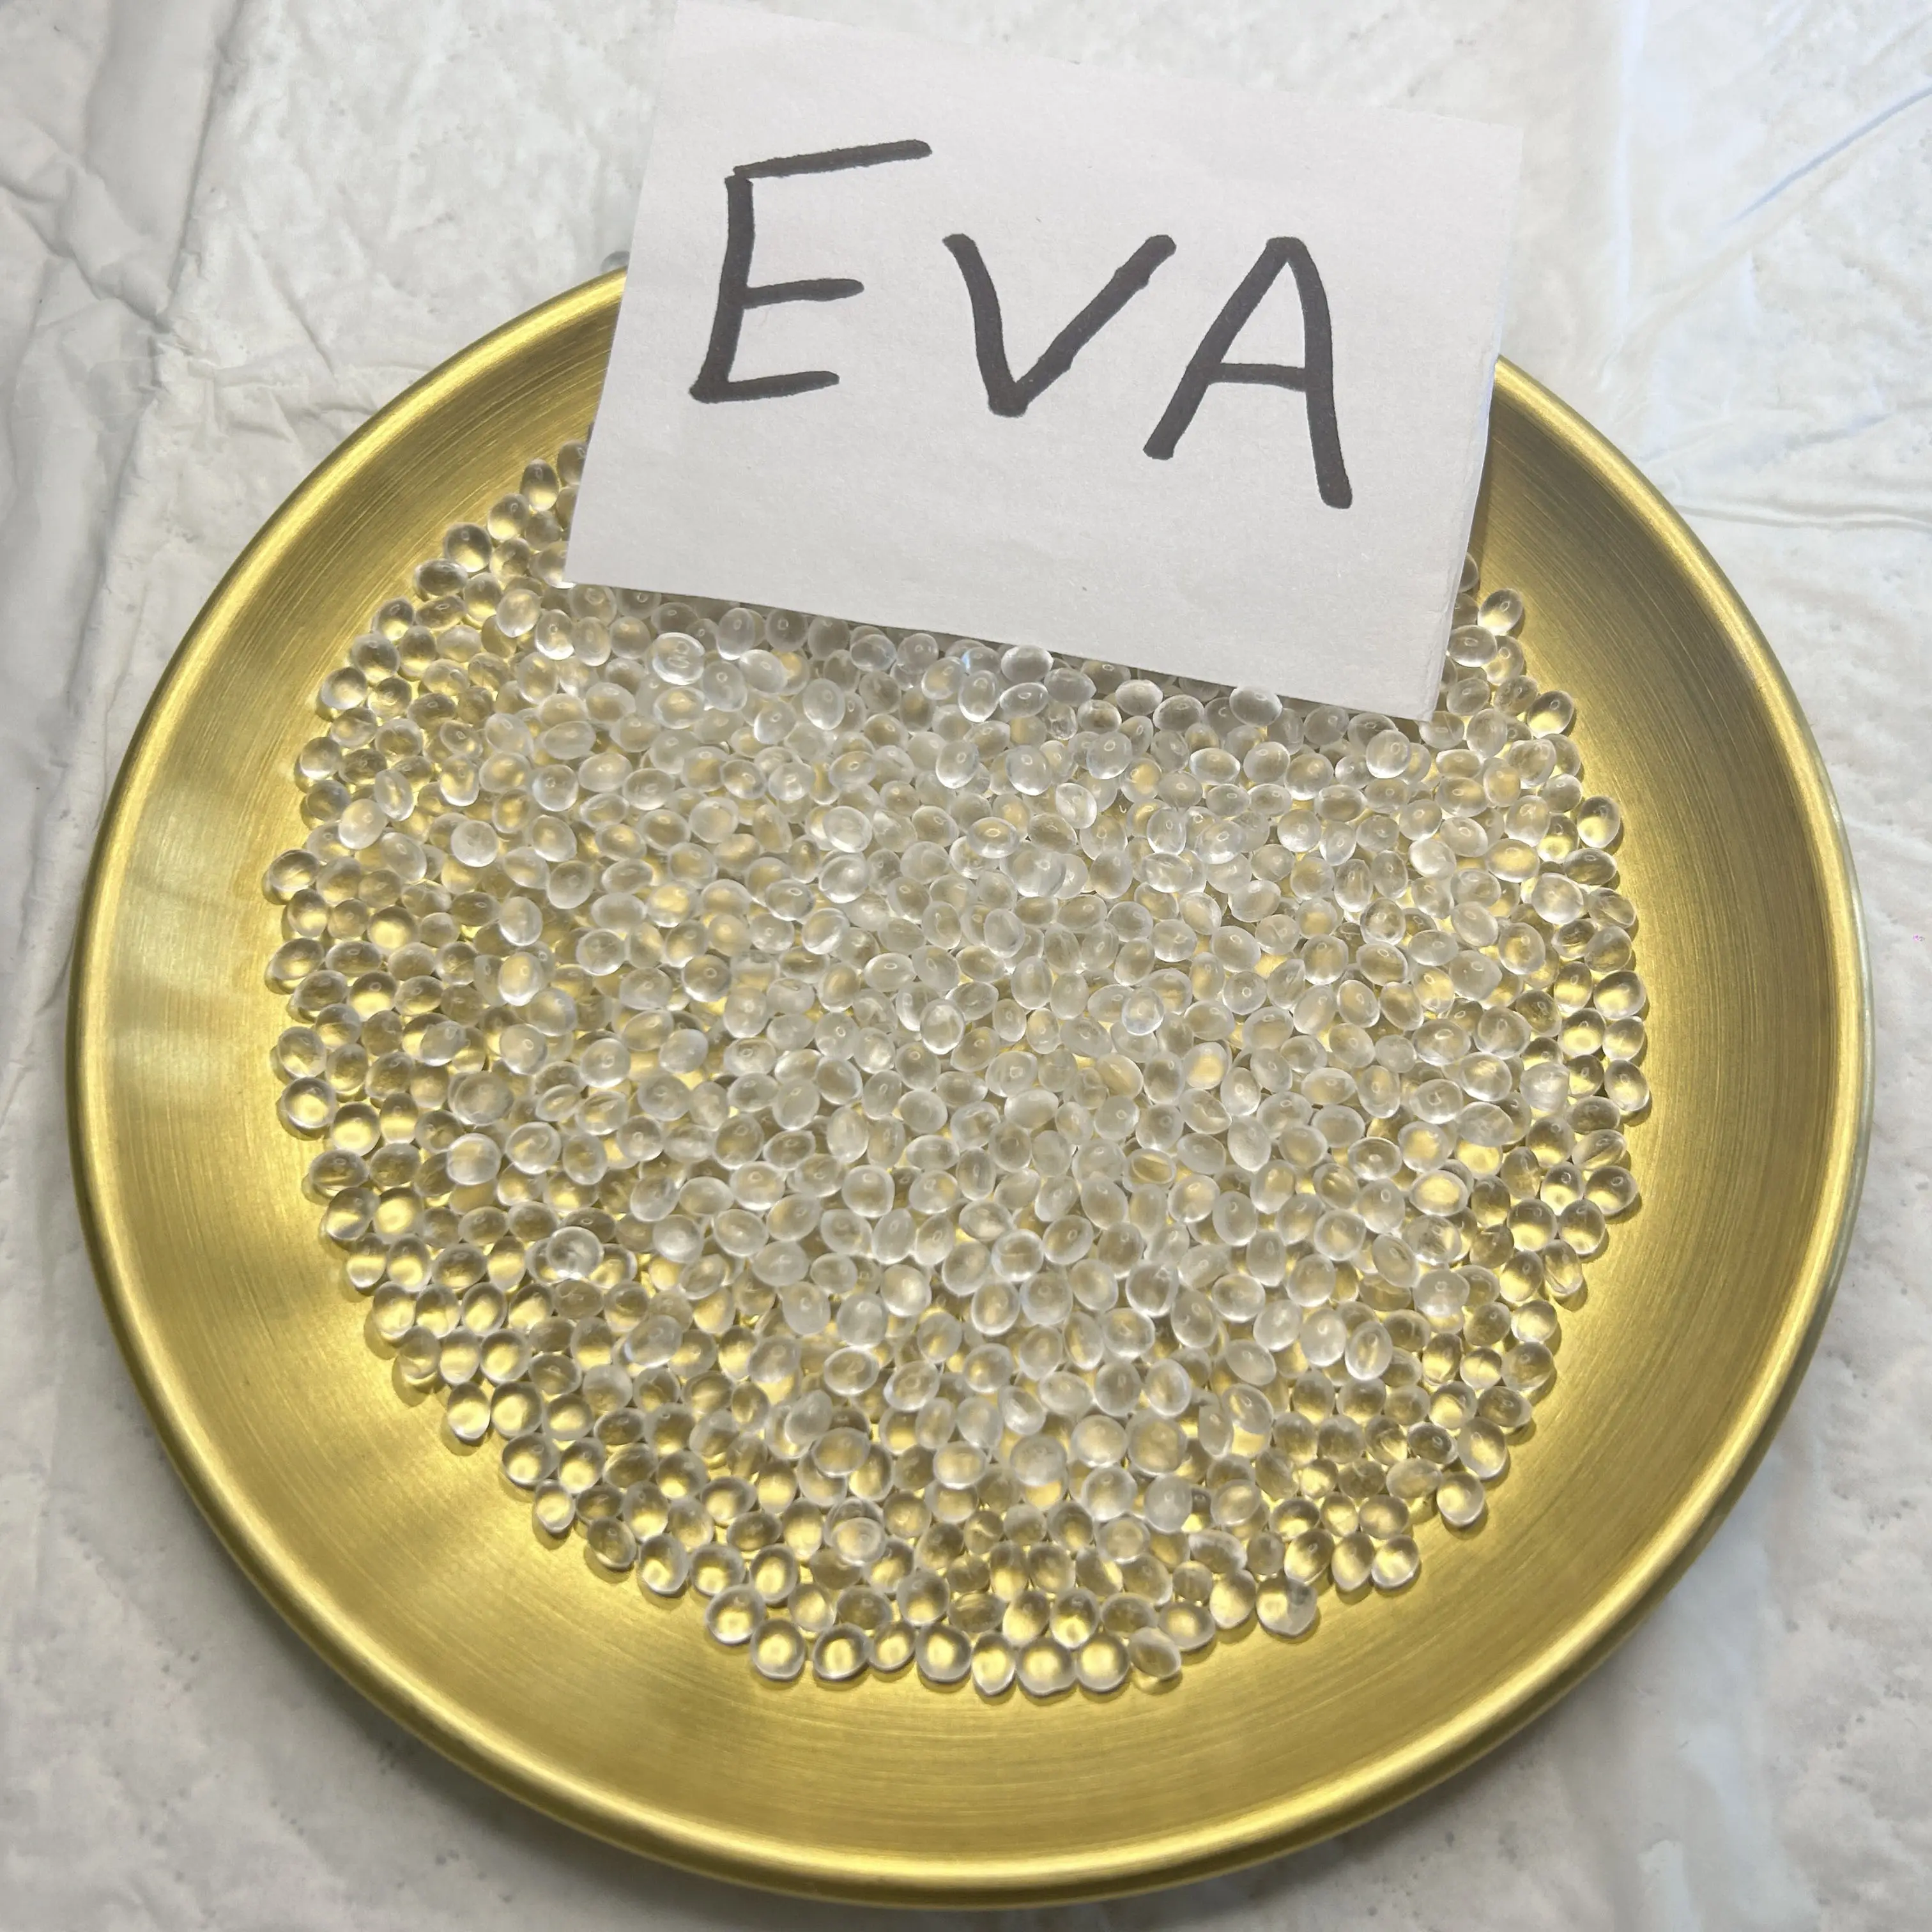 הדבקת EVA בצמיגות גבוהה בשימוש בדבק גרגירים תעשייתיים לרהיטים